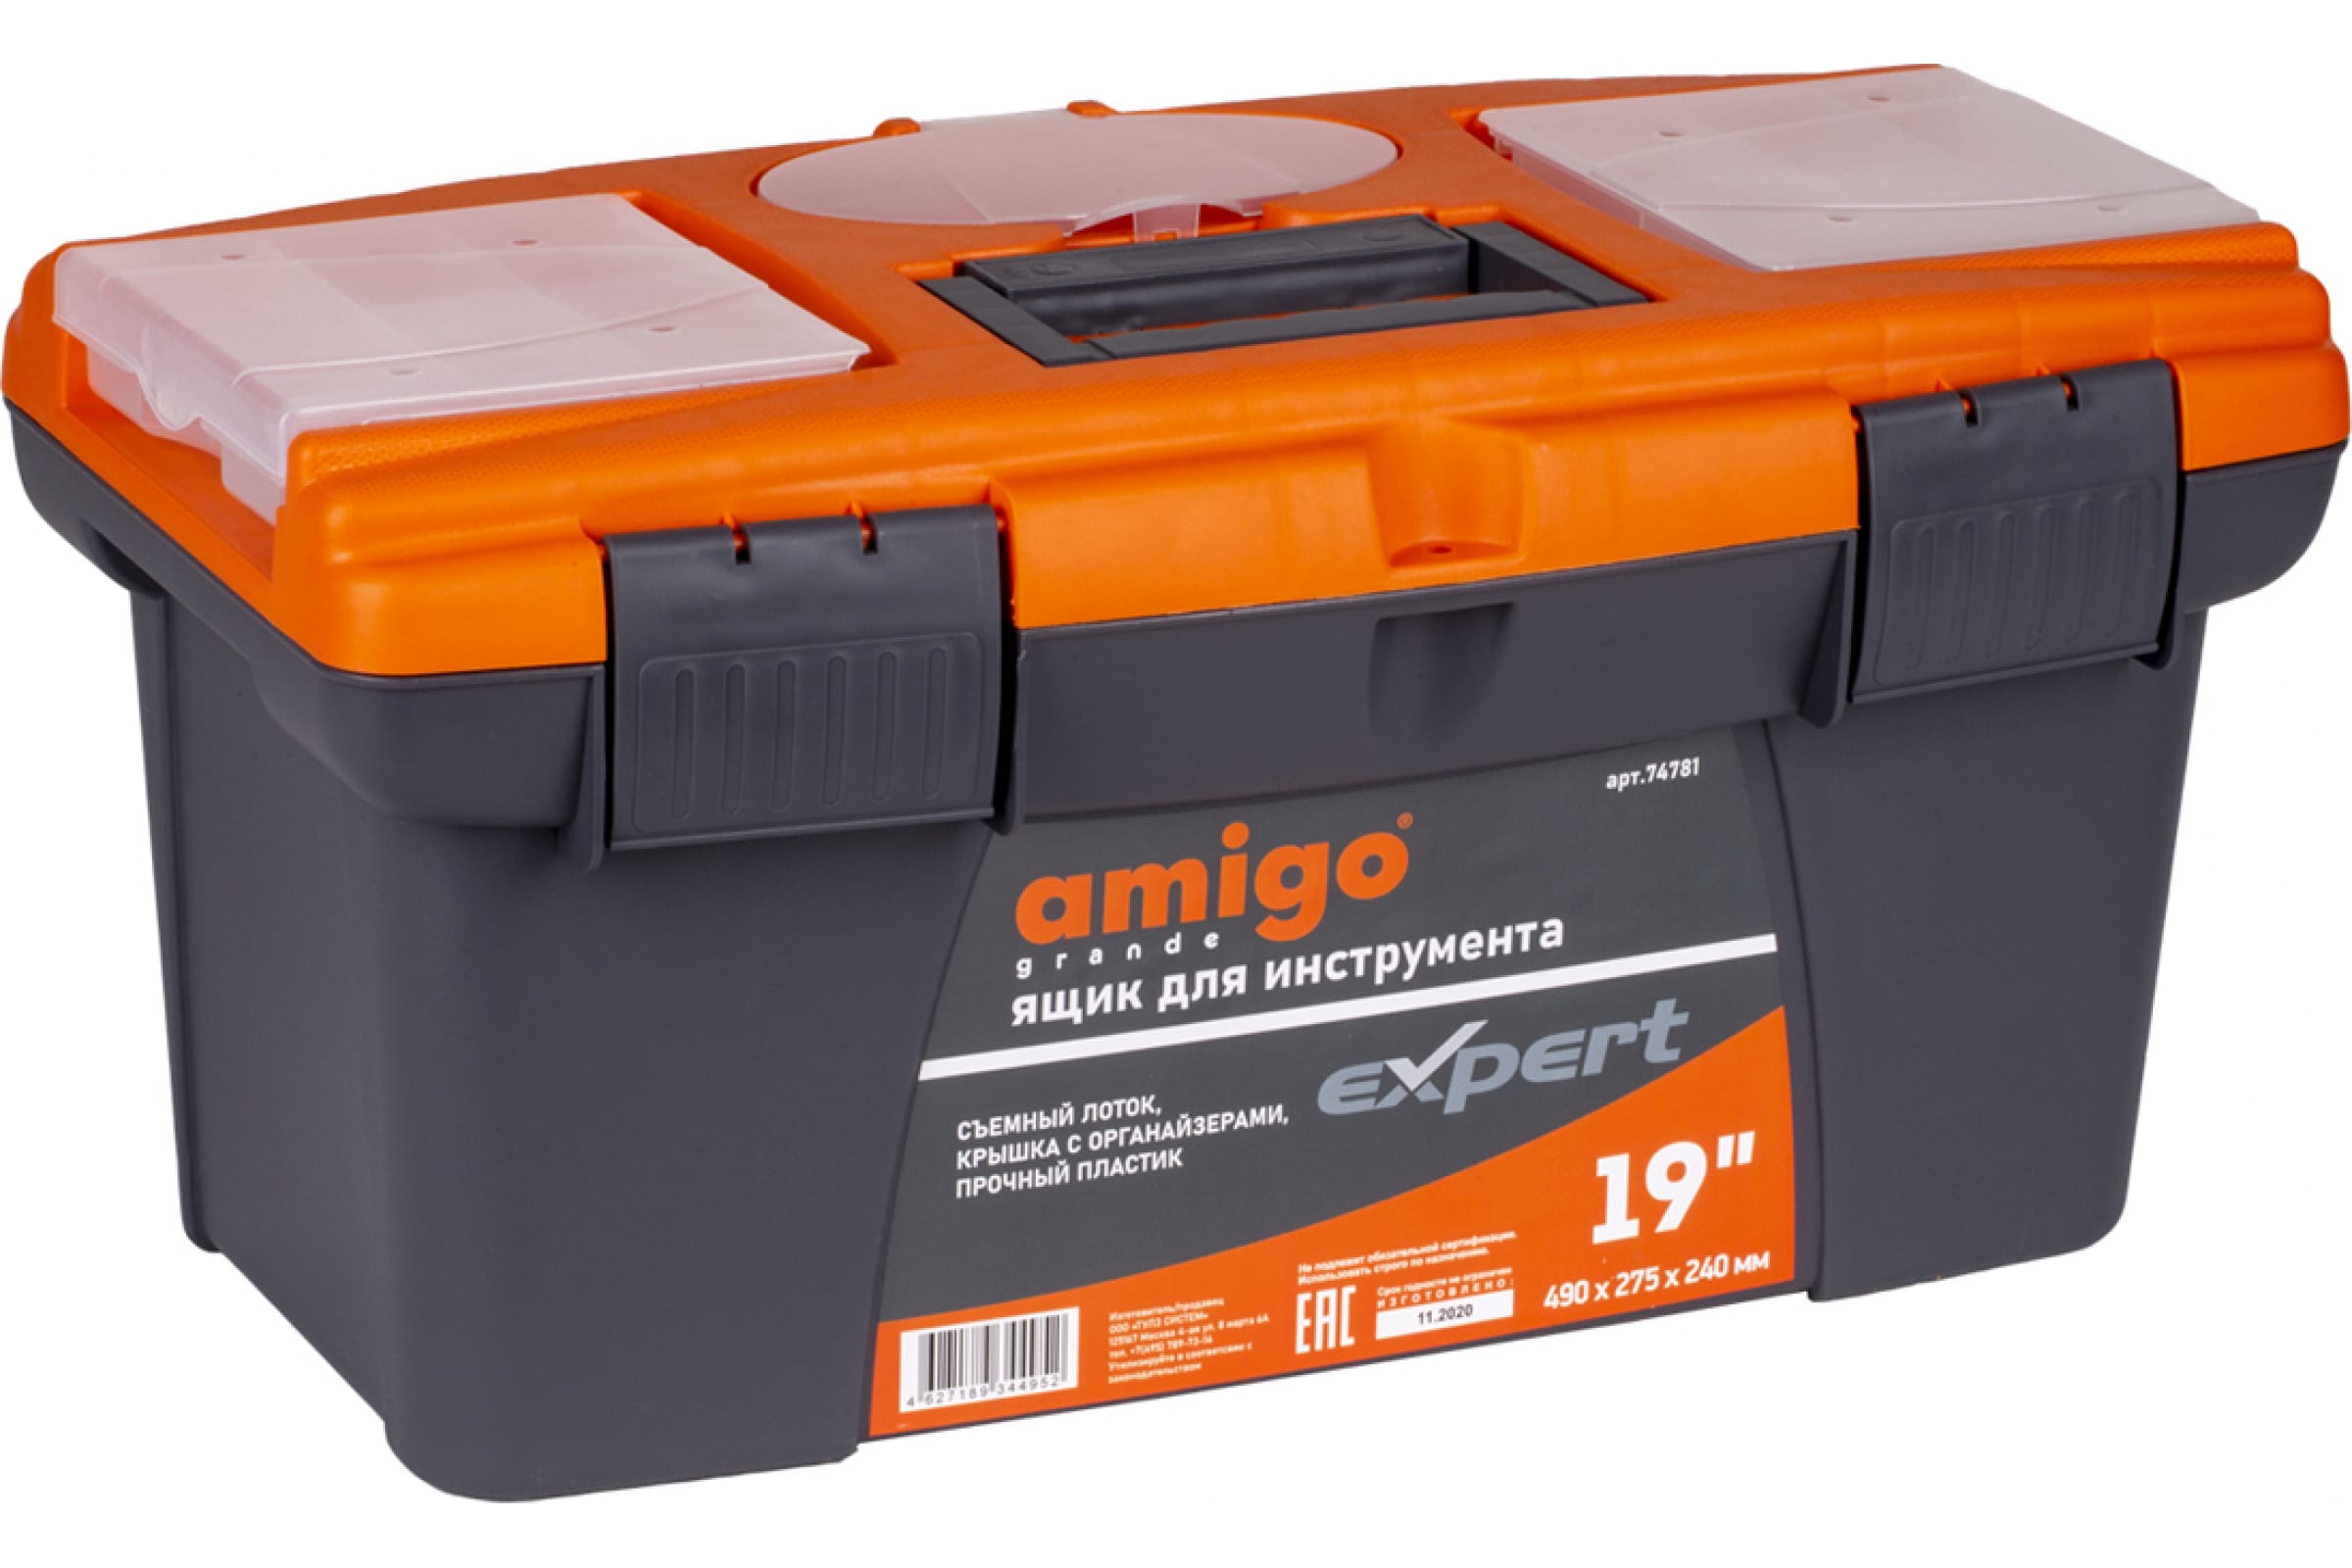 Ящик для инструмента AMIGO пластиковый, 19&quot;, 49х27,5х24 см 74781